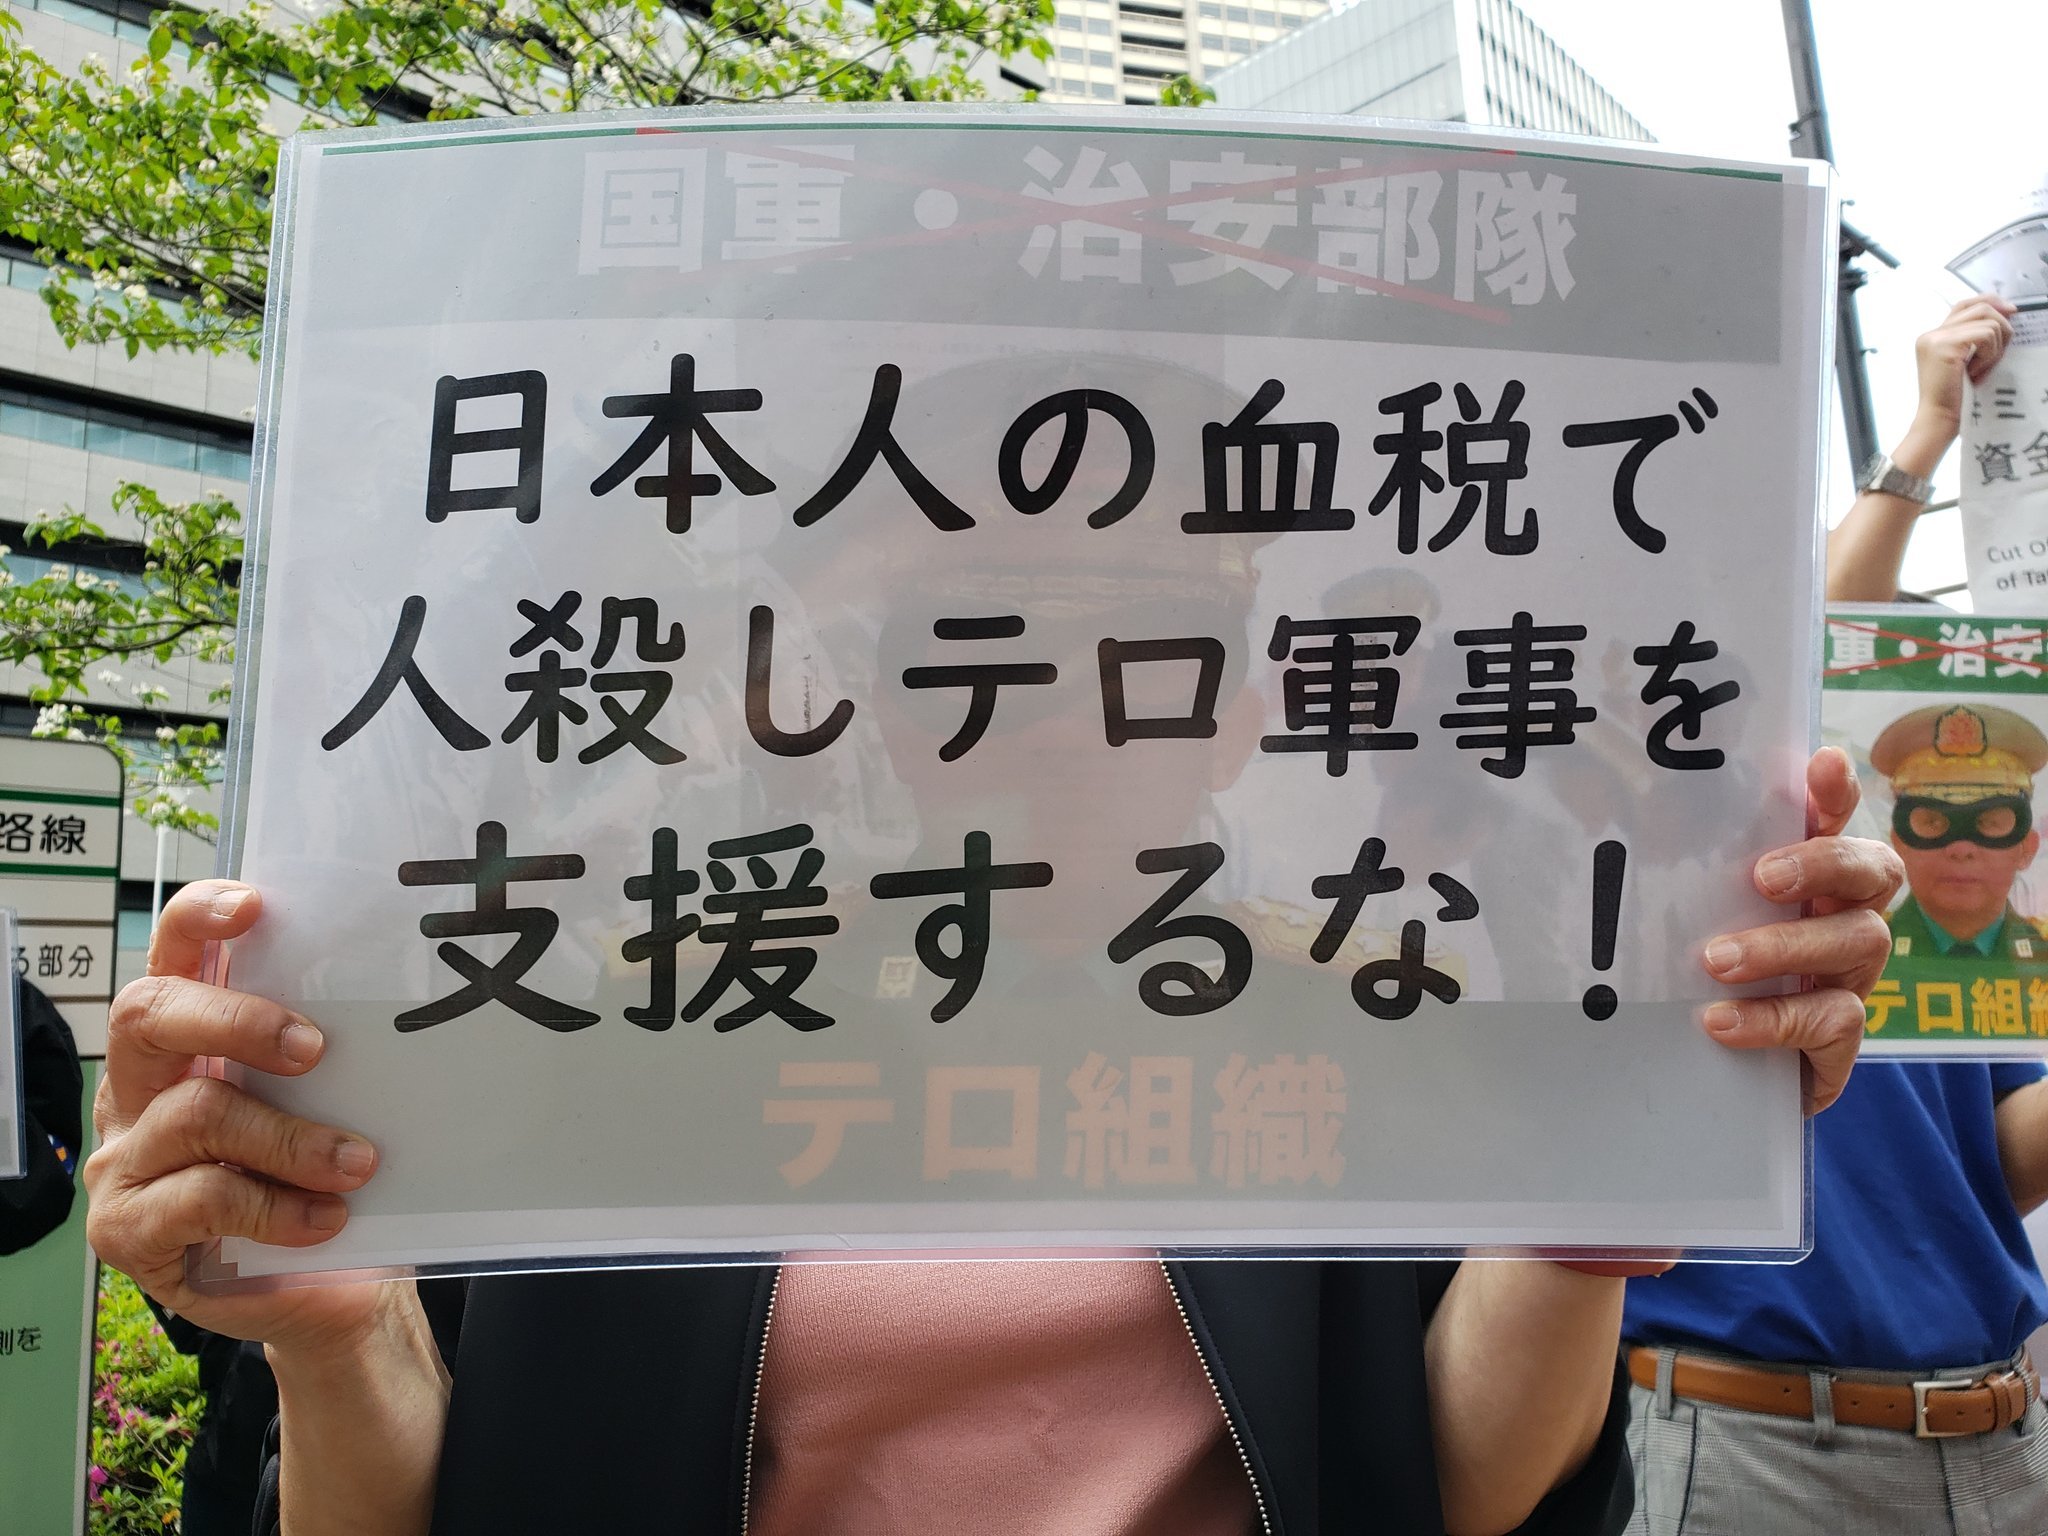 【報告】4月22日、在日ミャンマー人が日本財団に抗議・要請行動_a0336146_23391802.jpg